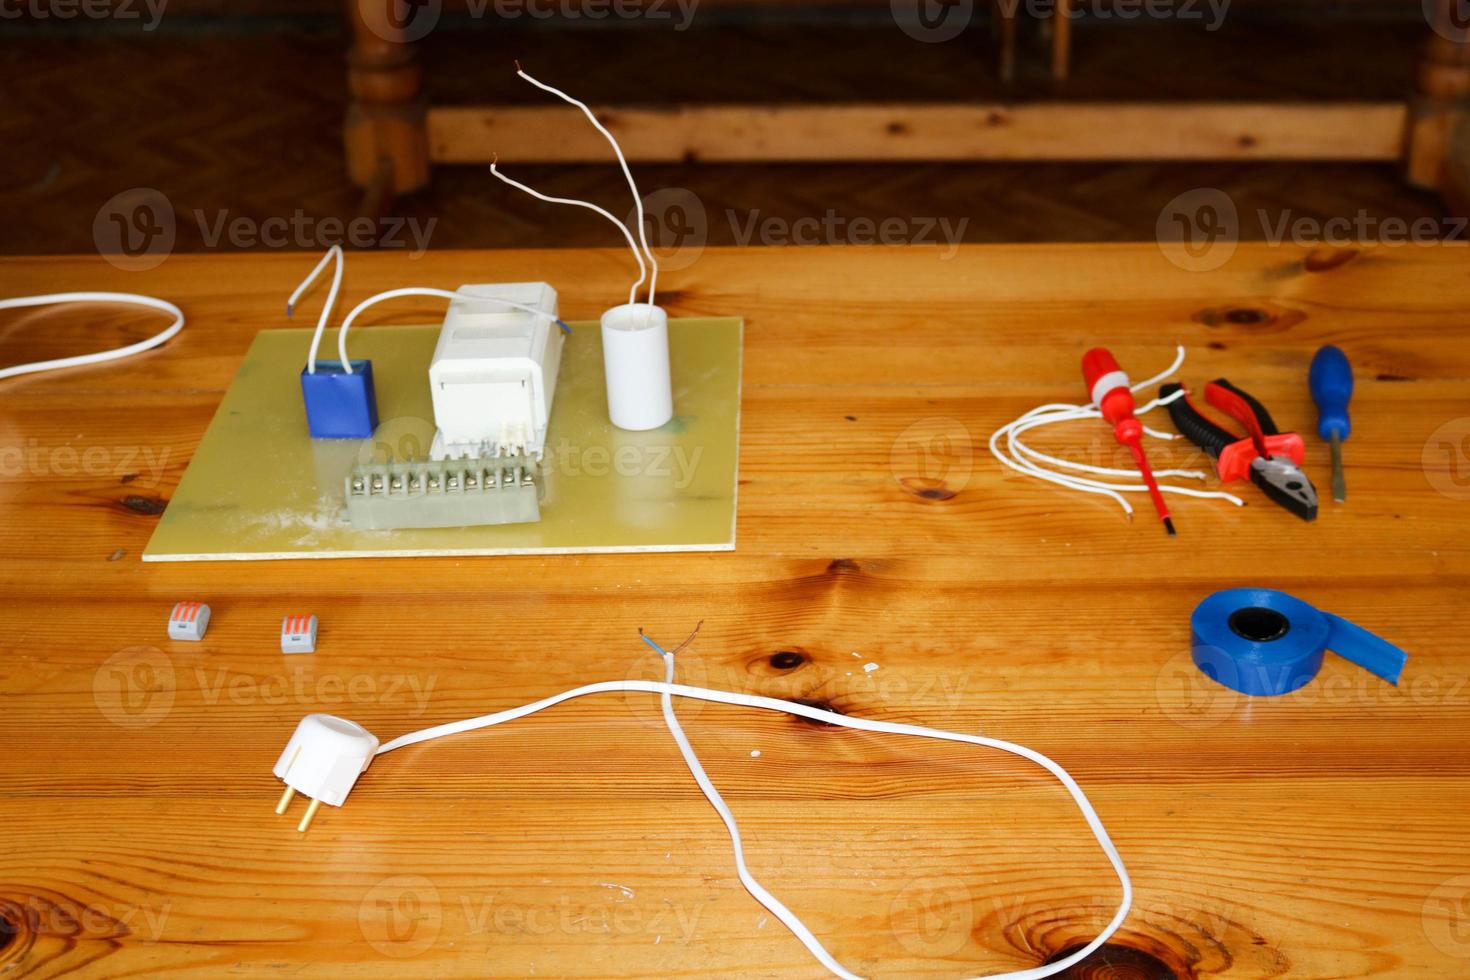 circuito eléctrico con cables y piezas de repuesto, equipo de instalación, alicates, cinta eléctrica azul, destornilladores sobre la mesa foto